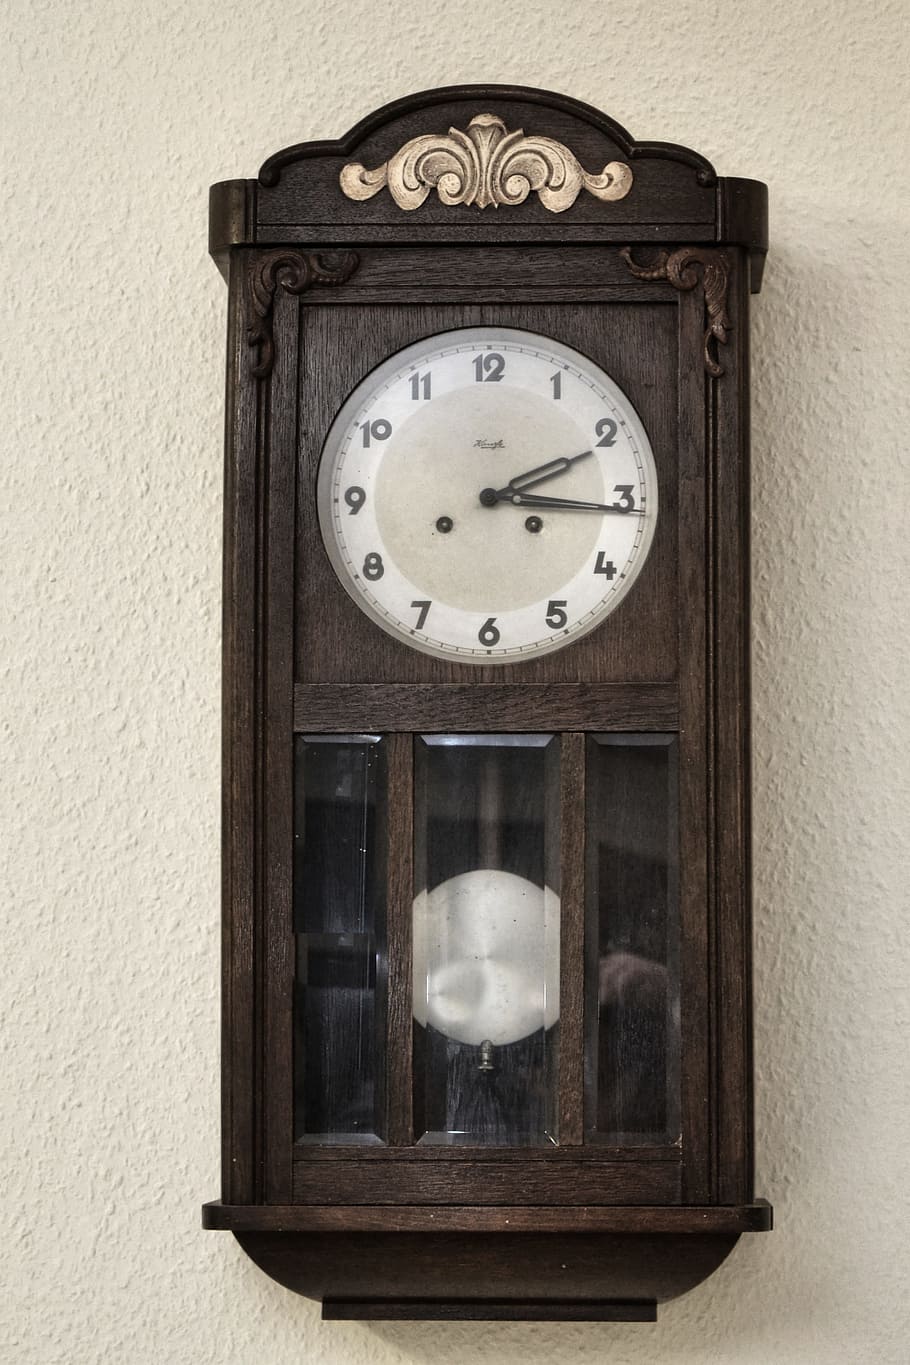 レギュレーター, 壁時計, 古い, 時計, 歴史的に, ノスタルジック, 懐かしさ, 時間, ウィンドウ, 昔ながらの